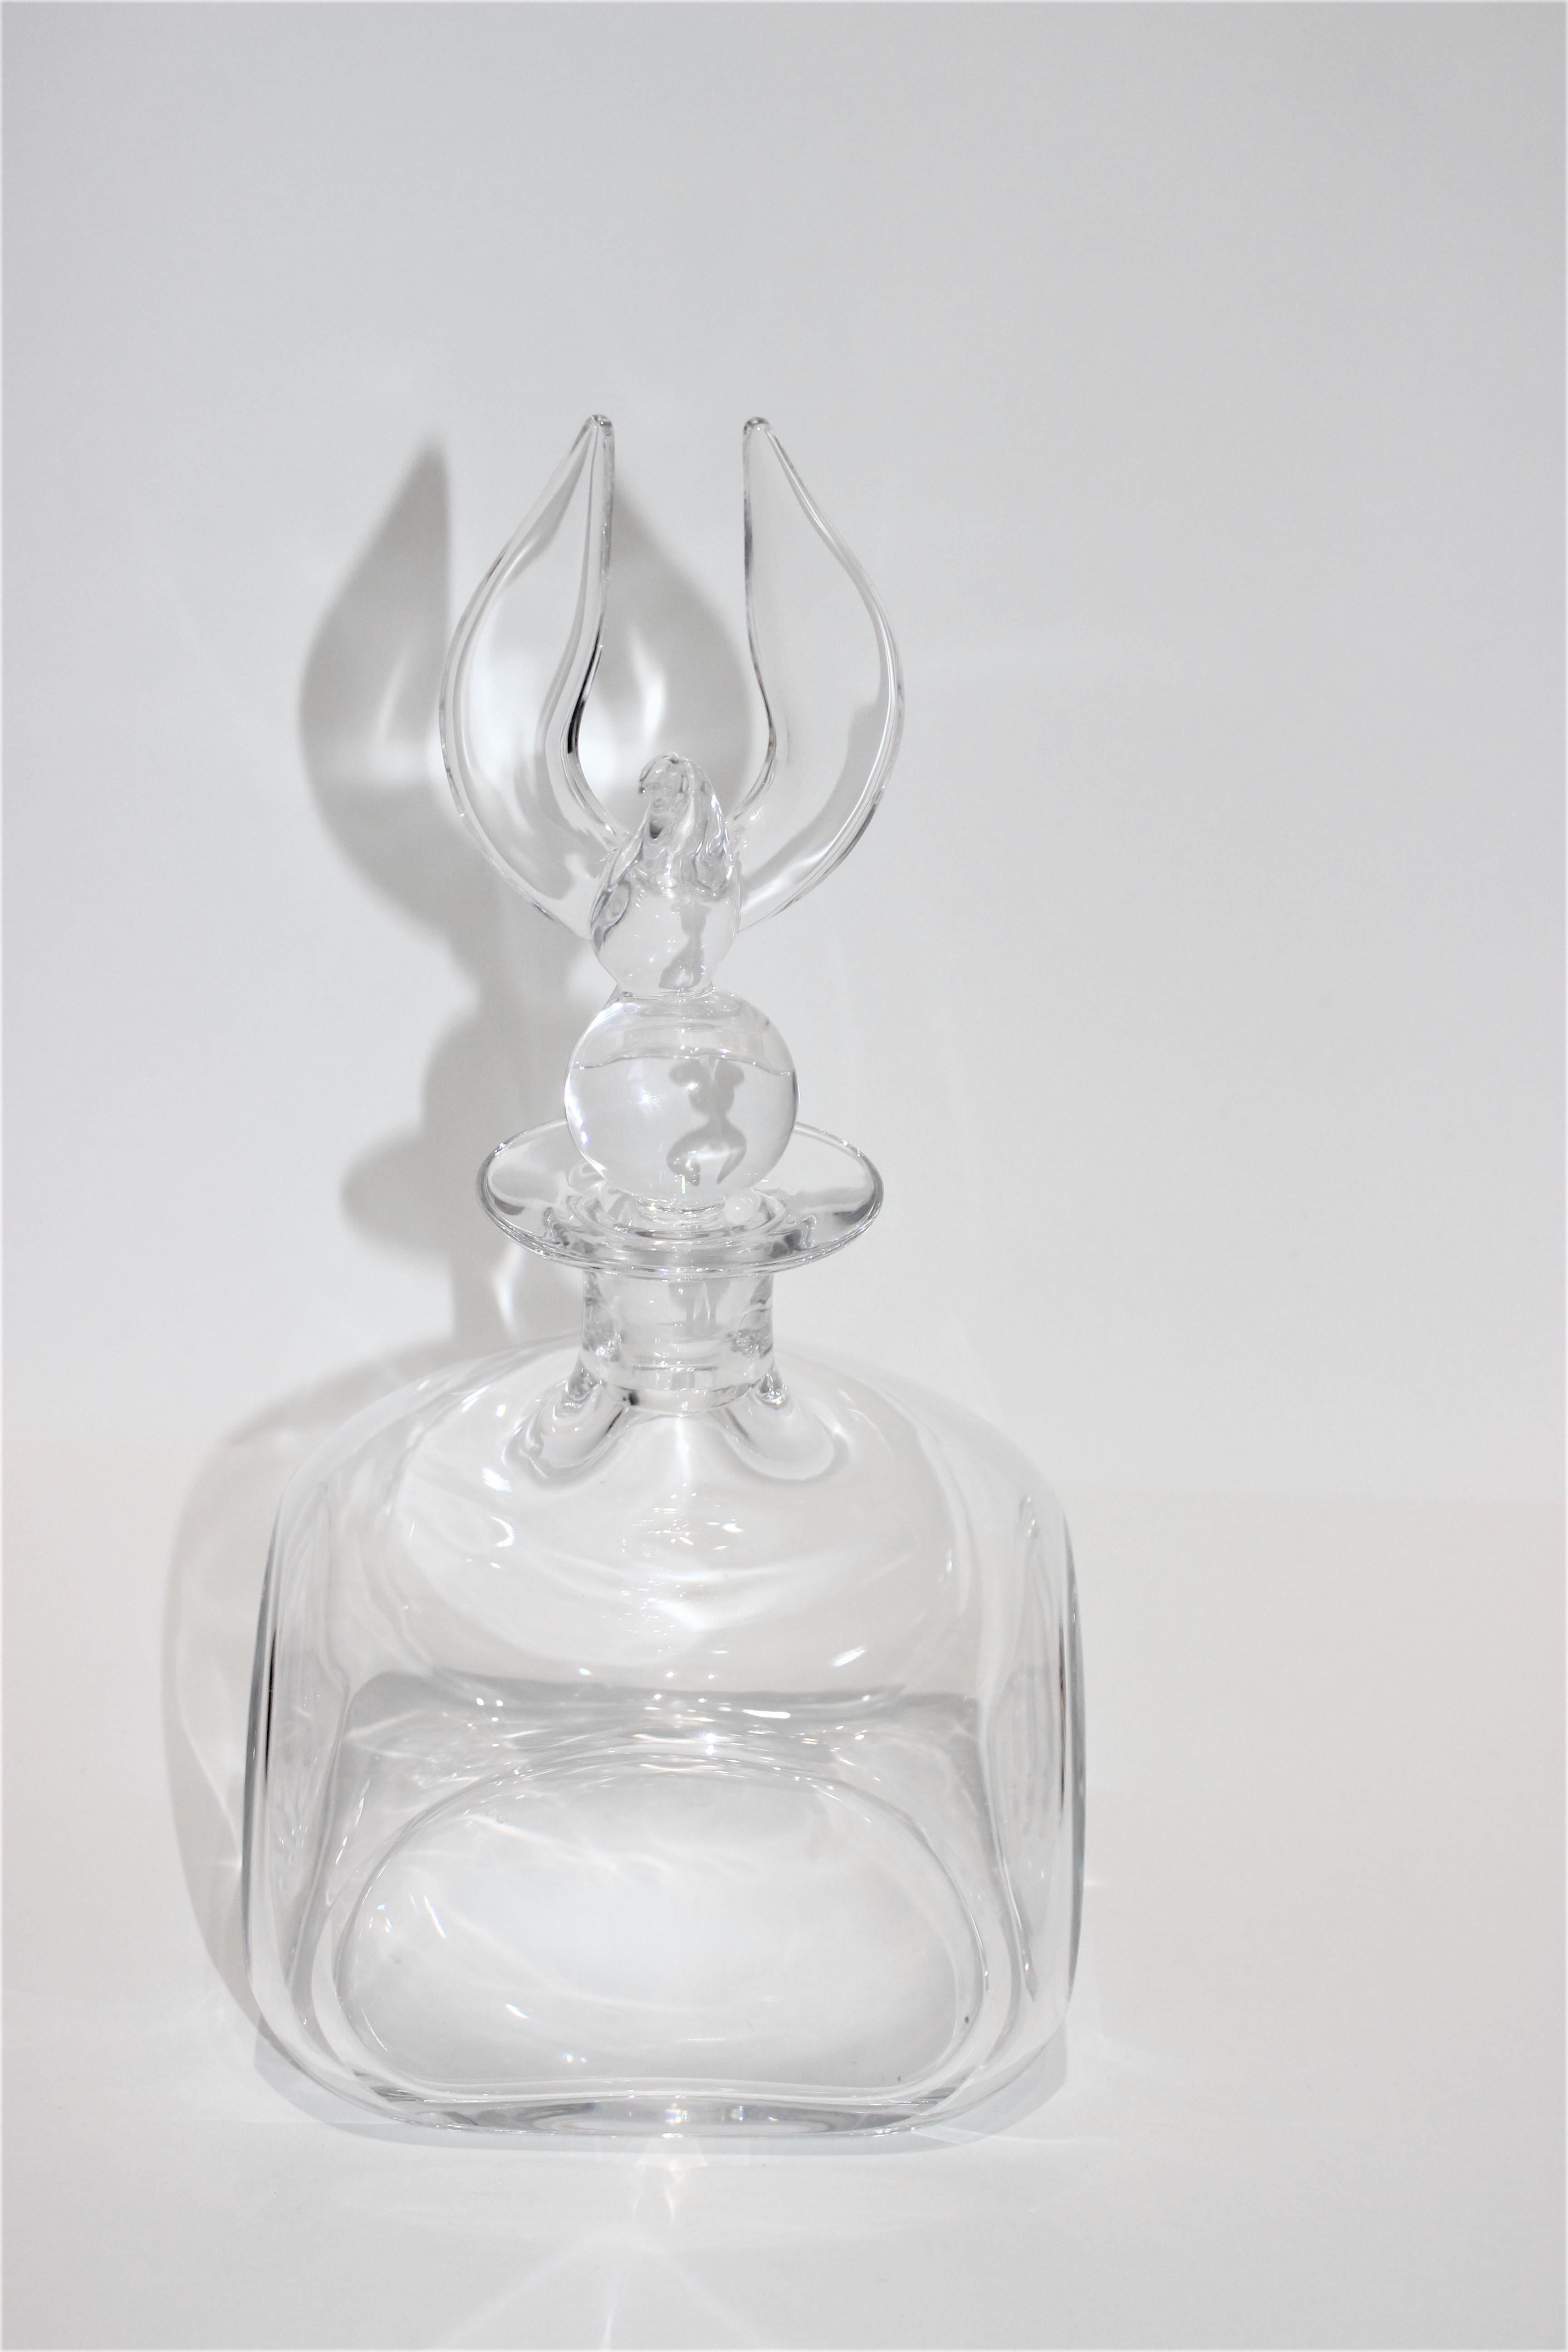 Carafe en cristal de Steuben avec bouchon à aigle américain sur une boule, un globe stylisé du monde, conçu par Lloyds Atkins, elle a été introduite pour la première fois en 1973 et n'est plus en production.

Signé au verso - voir dernière